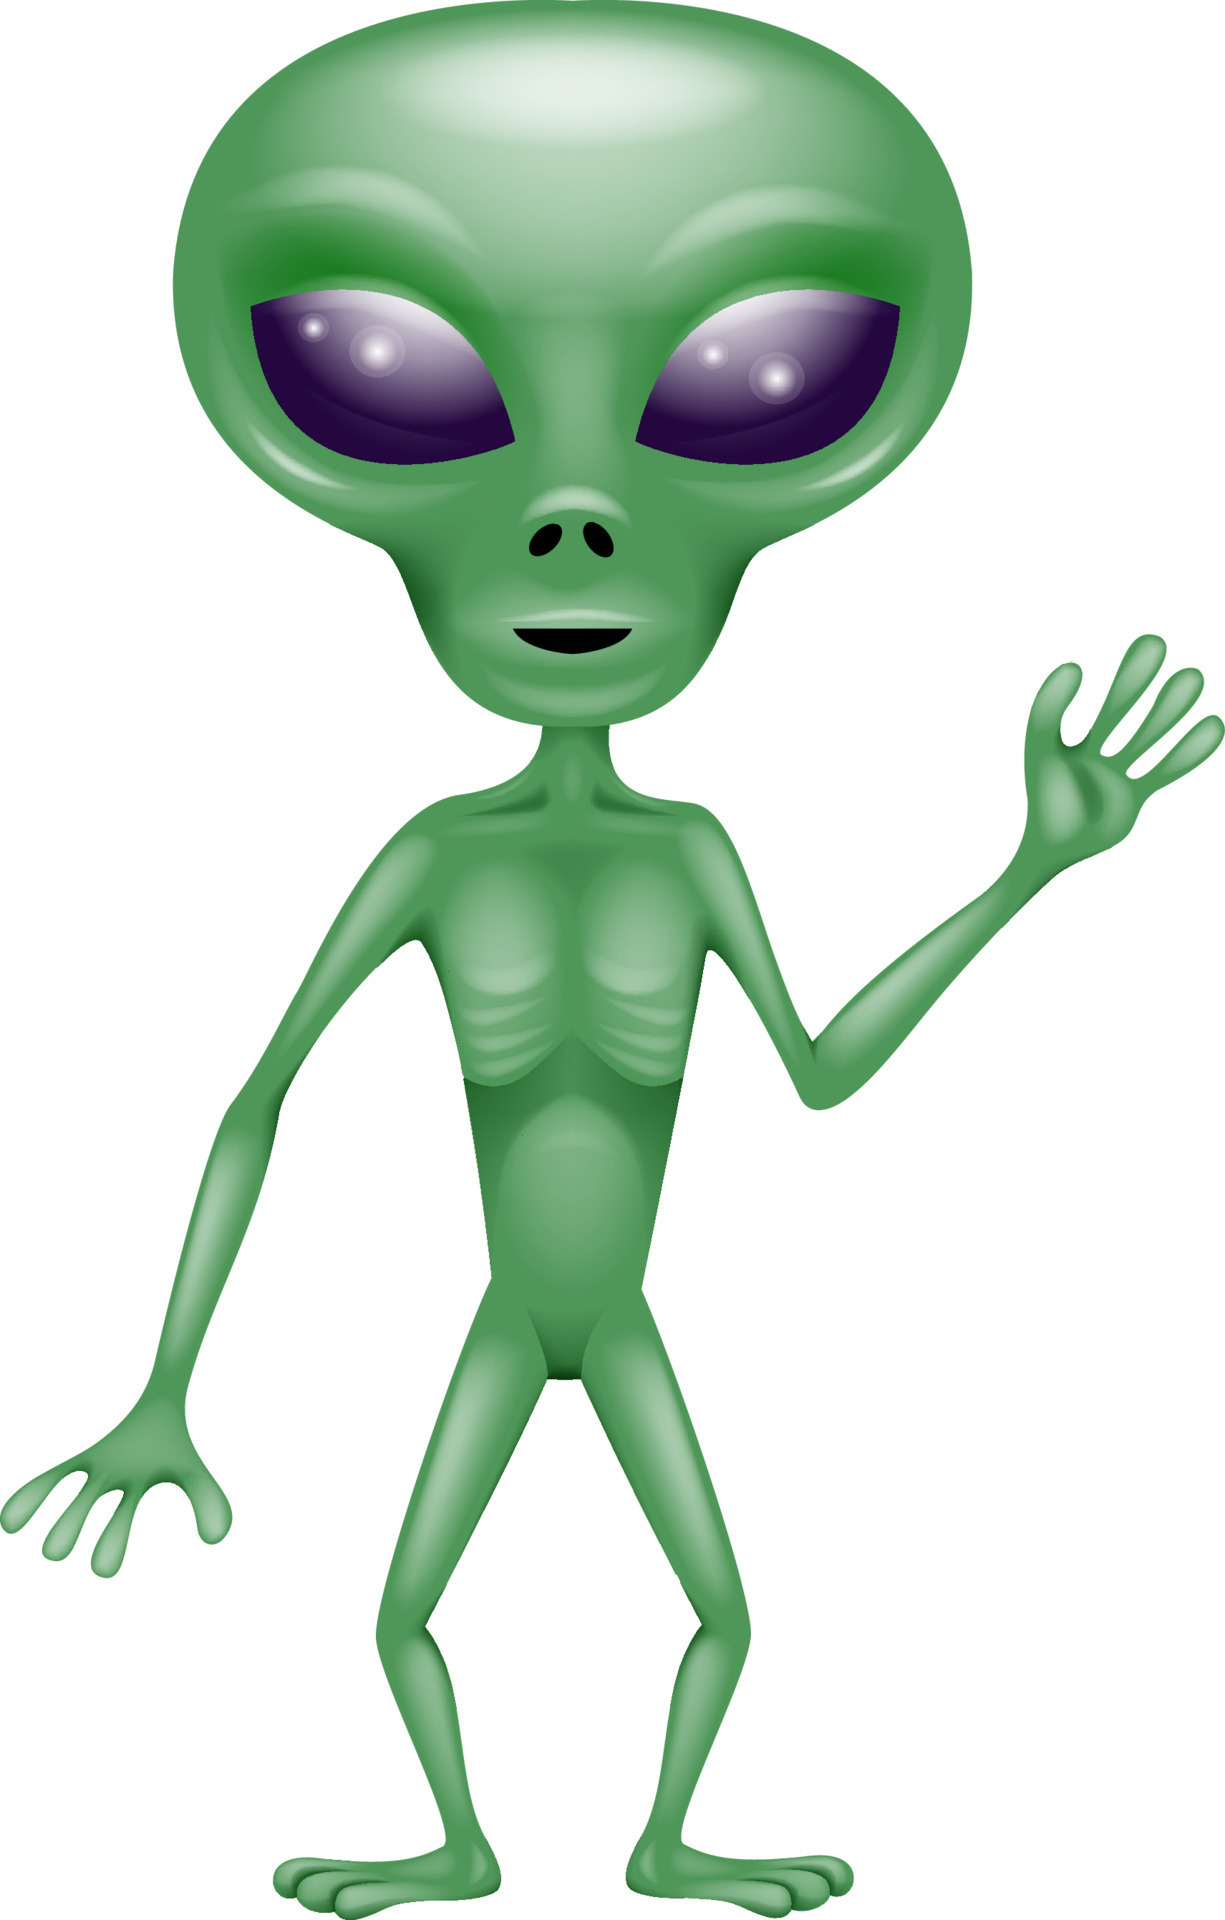 alienígena verde dos desenhos animados. ilustração vetorial de alienígenas  isolados em um fundo branco 6993375 Vetor no Vecteezy